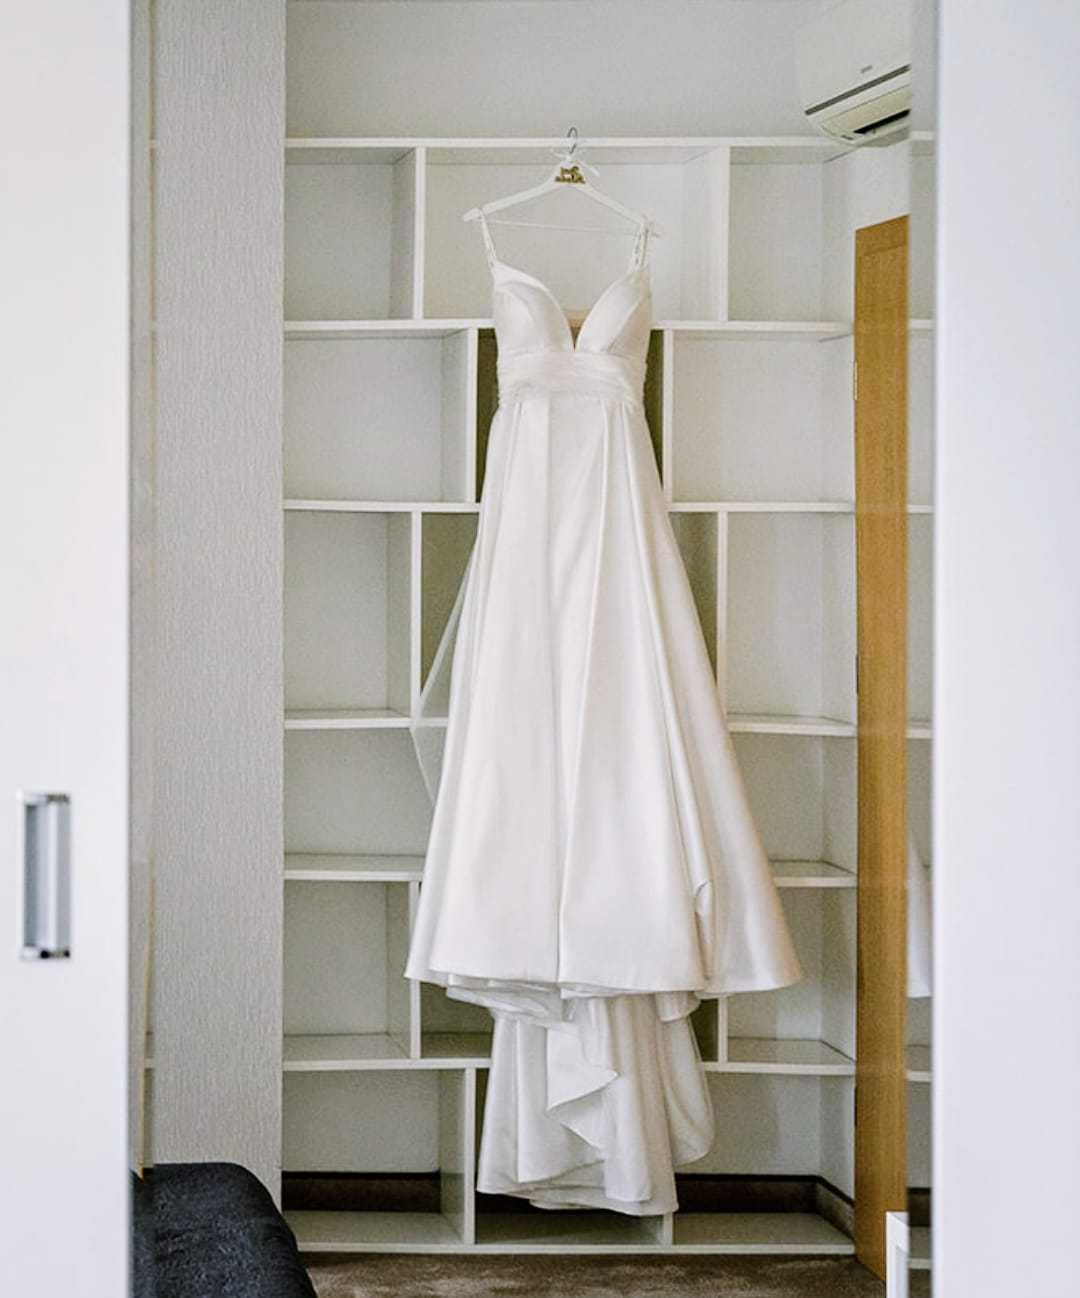 Suknia ślubna z trenem,gładka, dopinana etola, długie rękawiczki+welon